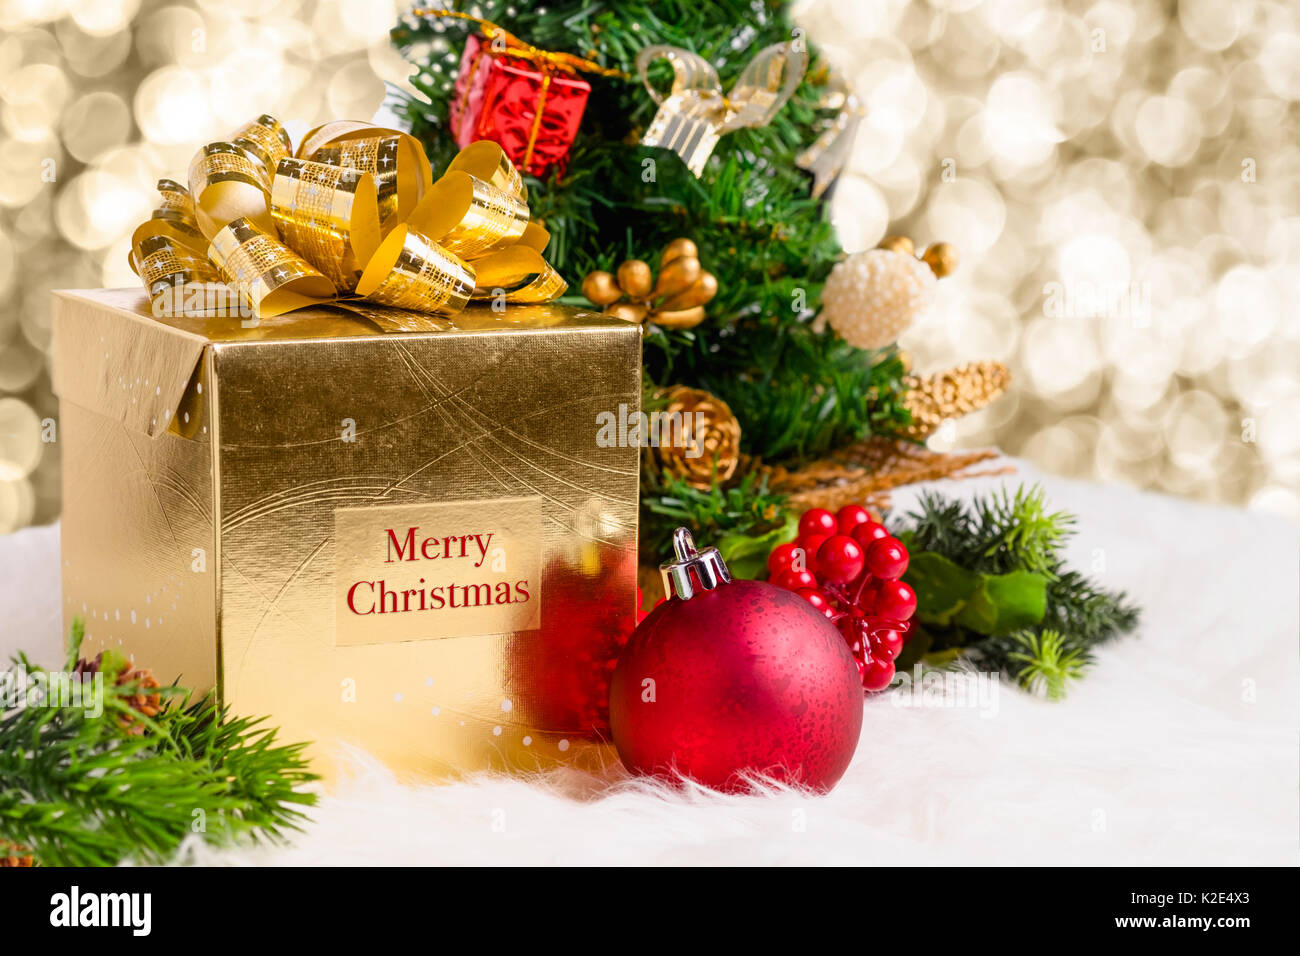 Glänzendes gold Geschenkbox mit Frohe Weihnachten Wort mit rot Deko Kugel, Kiefer code und Xmas Tree auf weißem Fell mit Glanz Gottes Licht bokeh Hintergrund, Wi Stockfoto